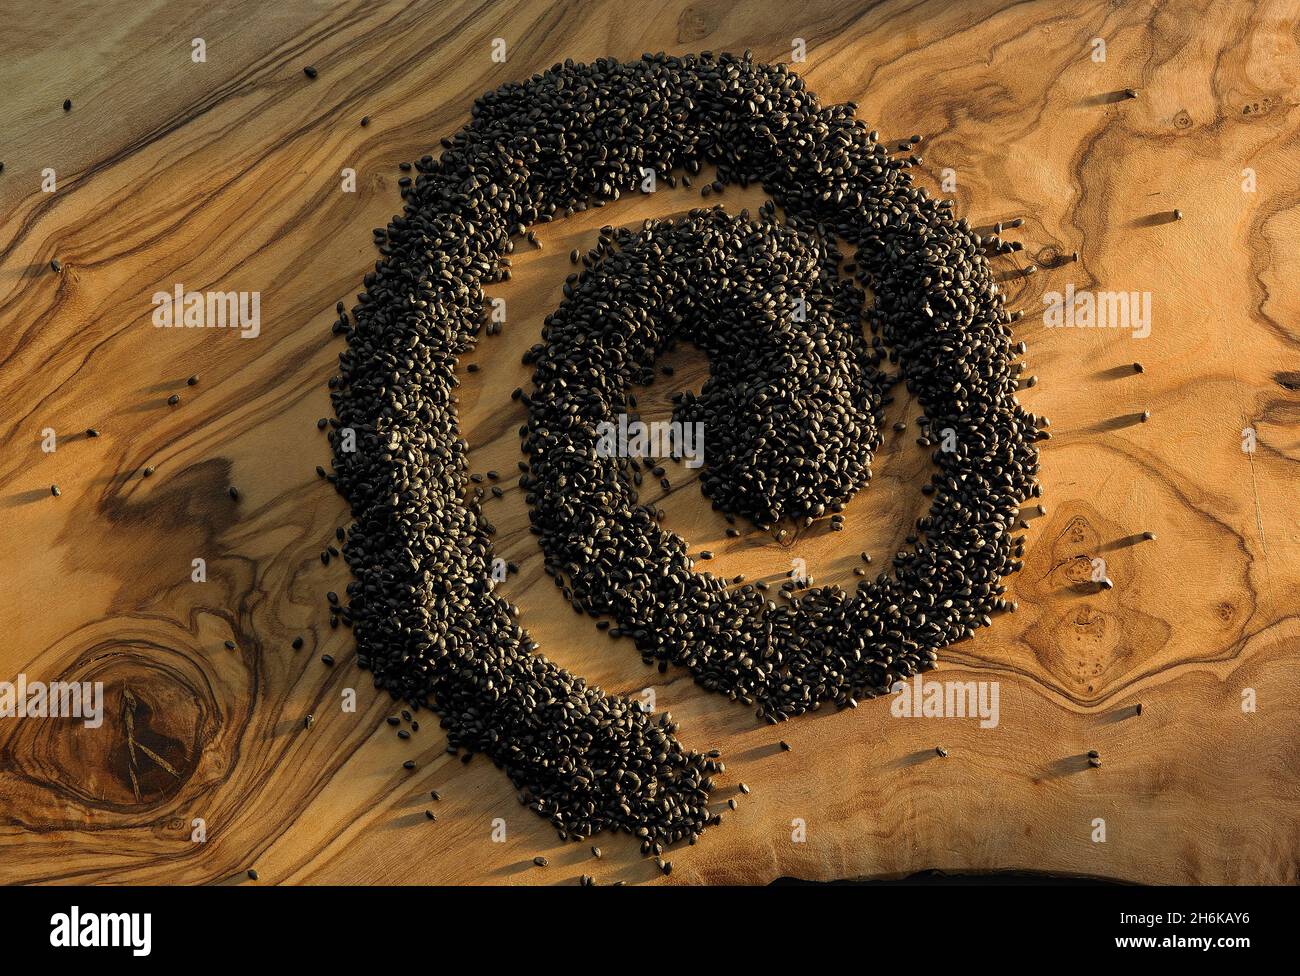 Graines noires formant une spirale sur une planche à découper en bois Banque D'Images